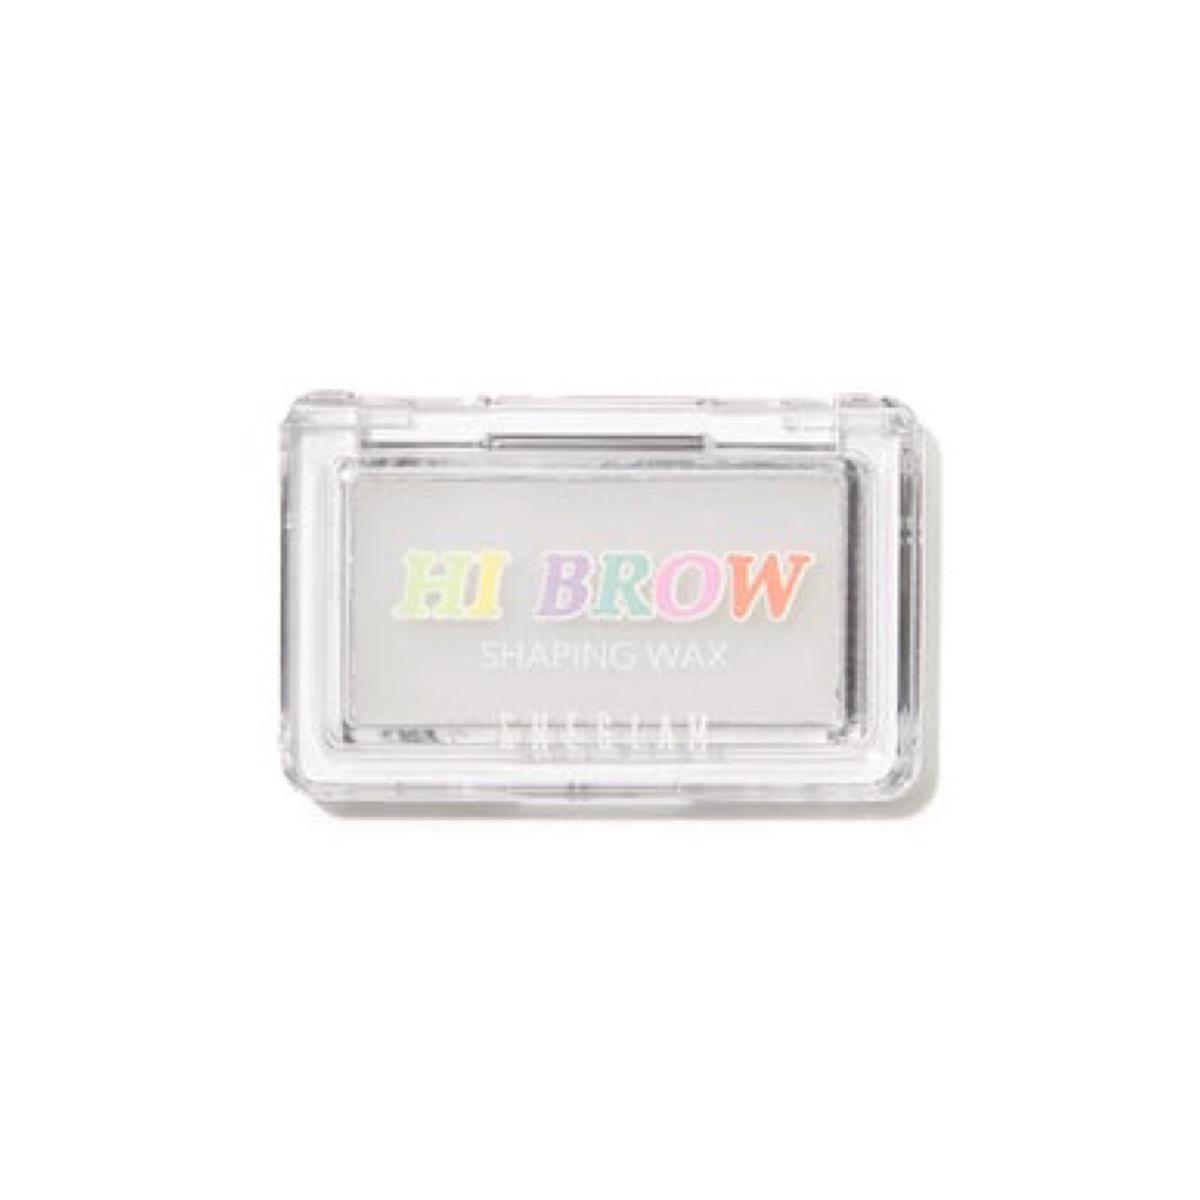 صابون ابرو - Hi brow shaping wax